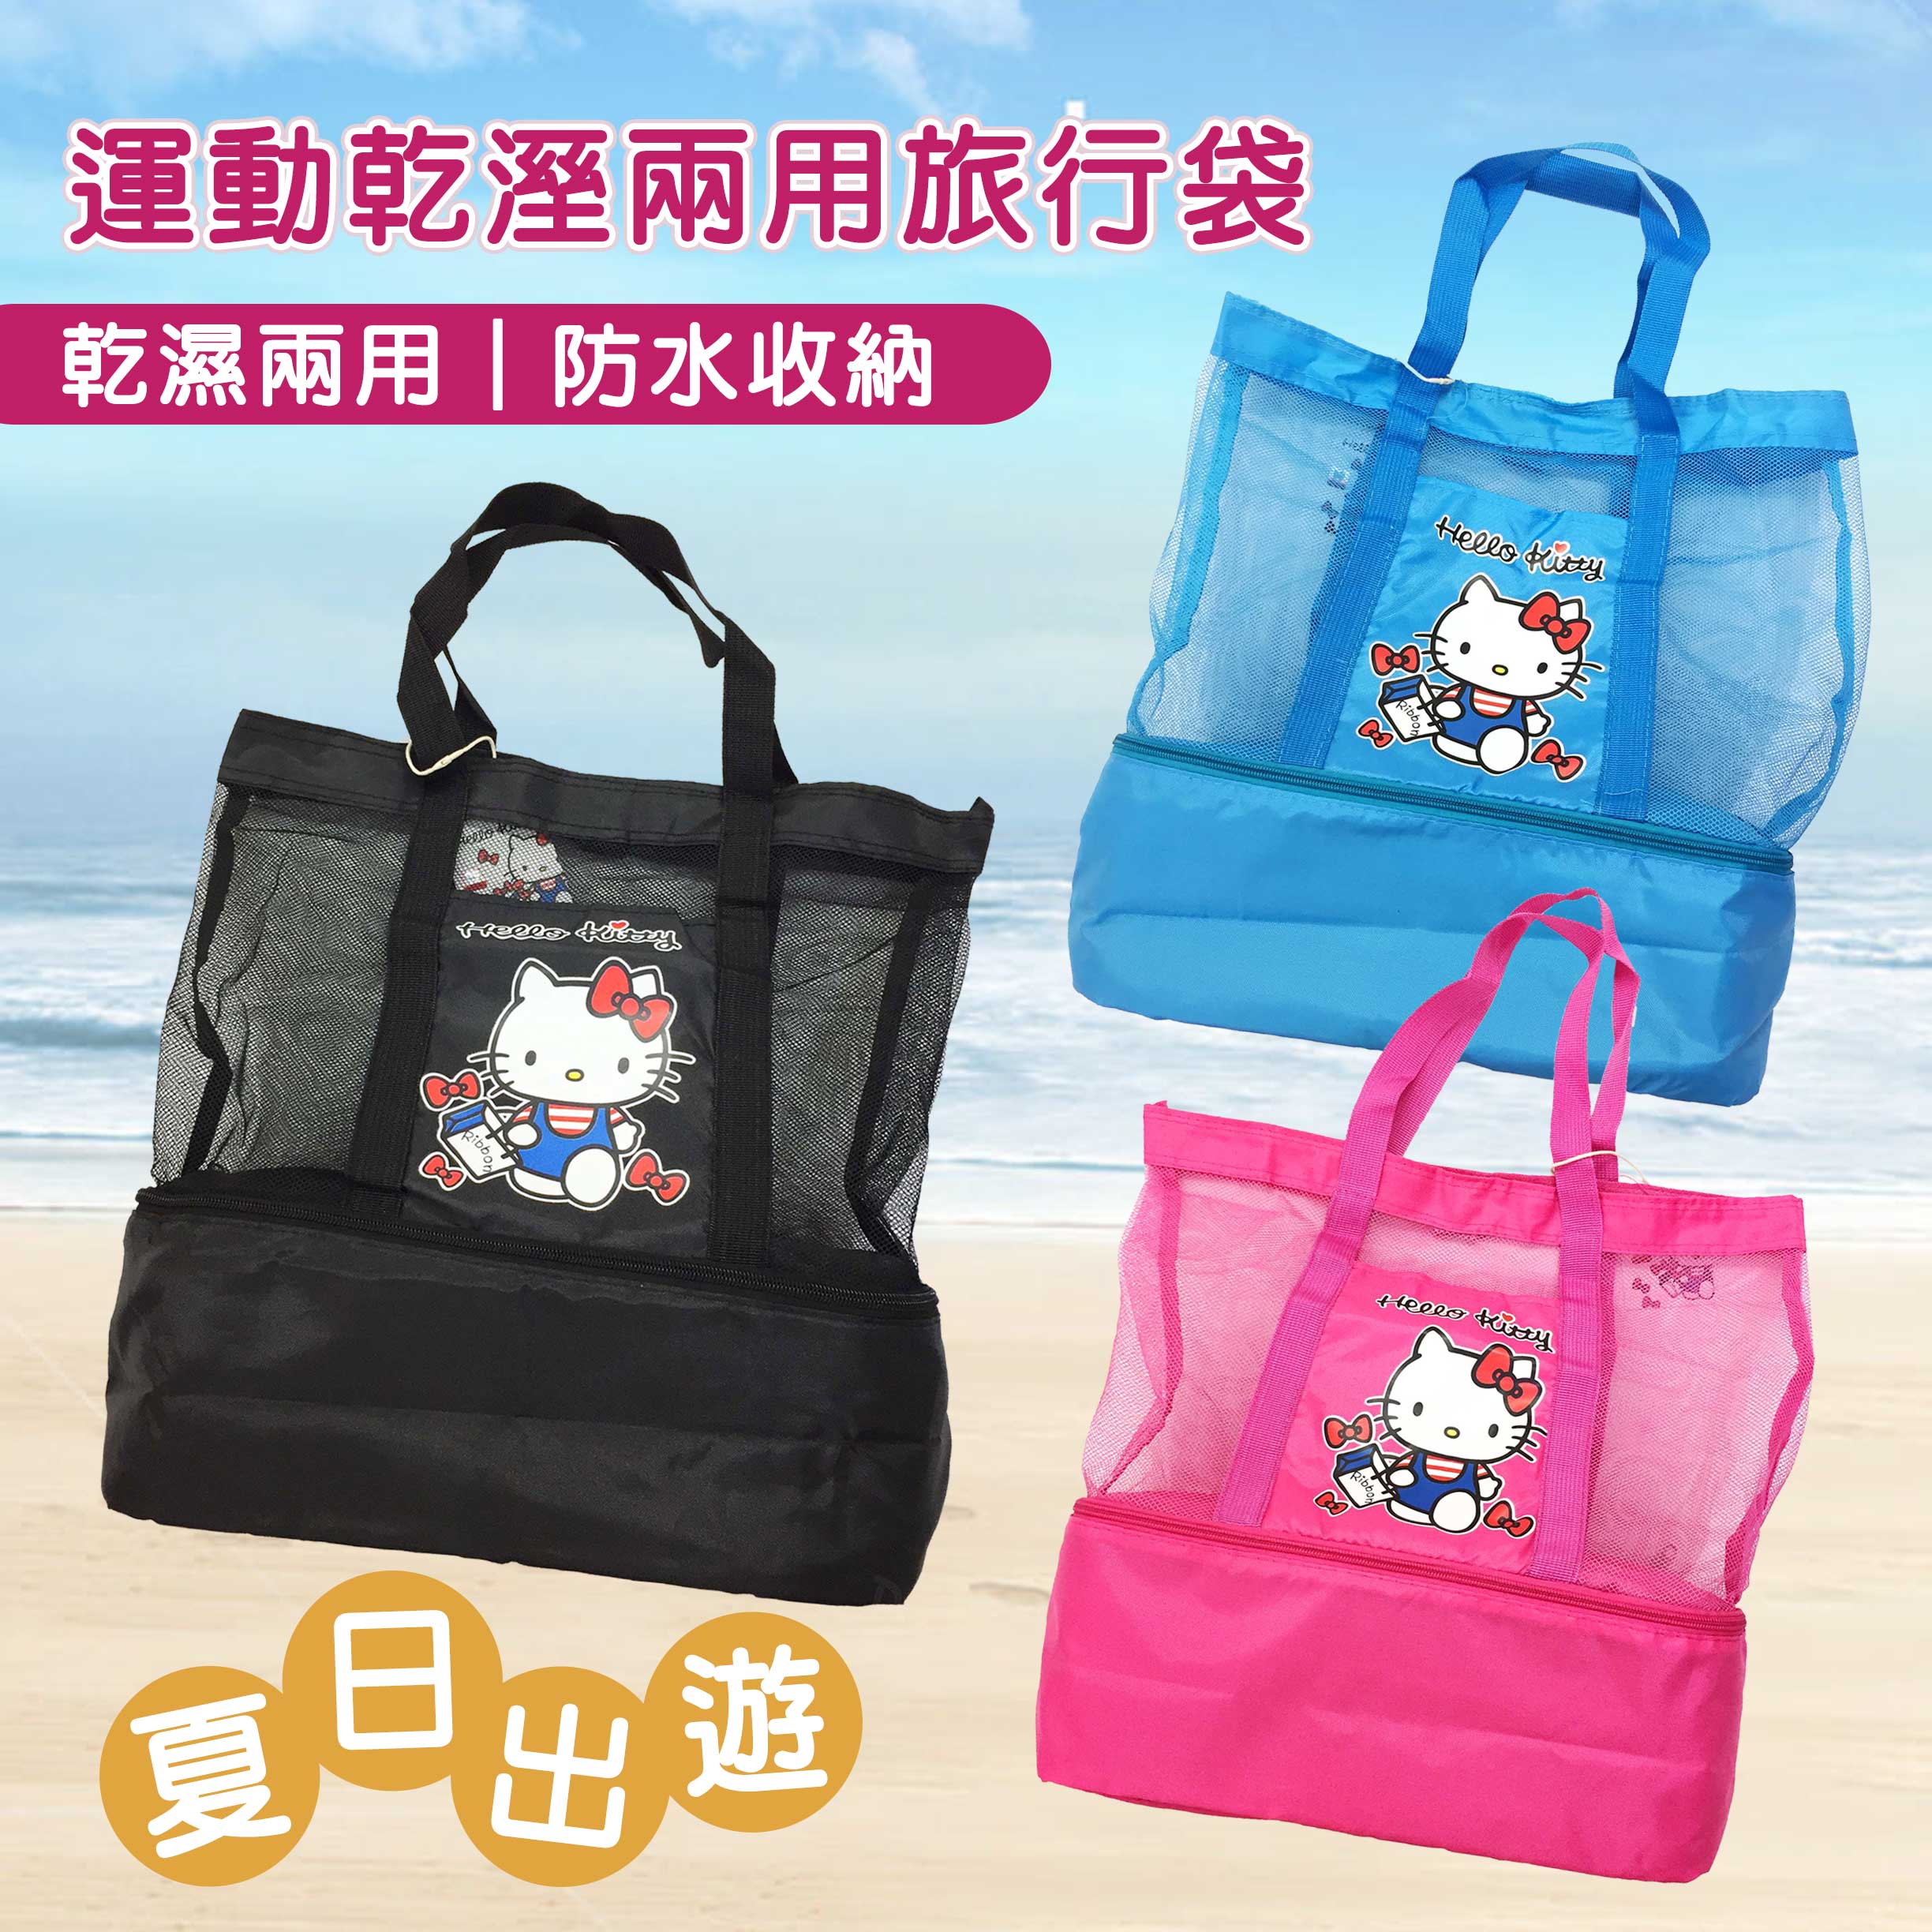 運動乾溼兩用旅行袋-HELLO KITTY 三麗鷗 Sanrio 正版授權